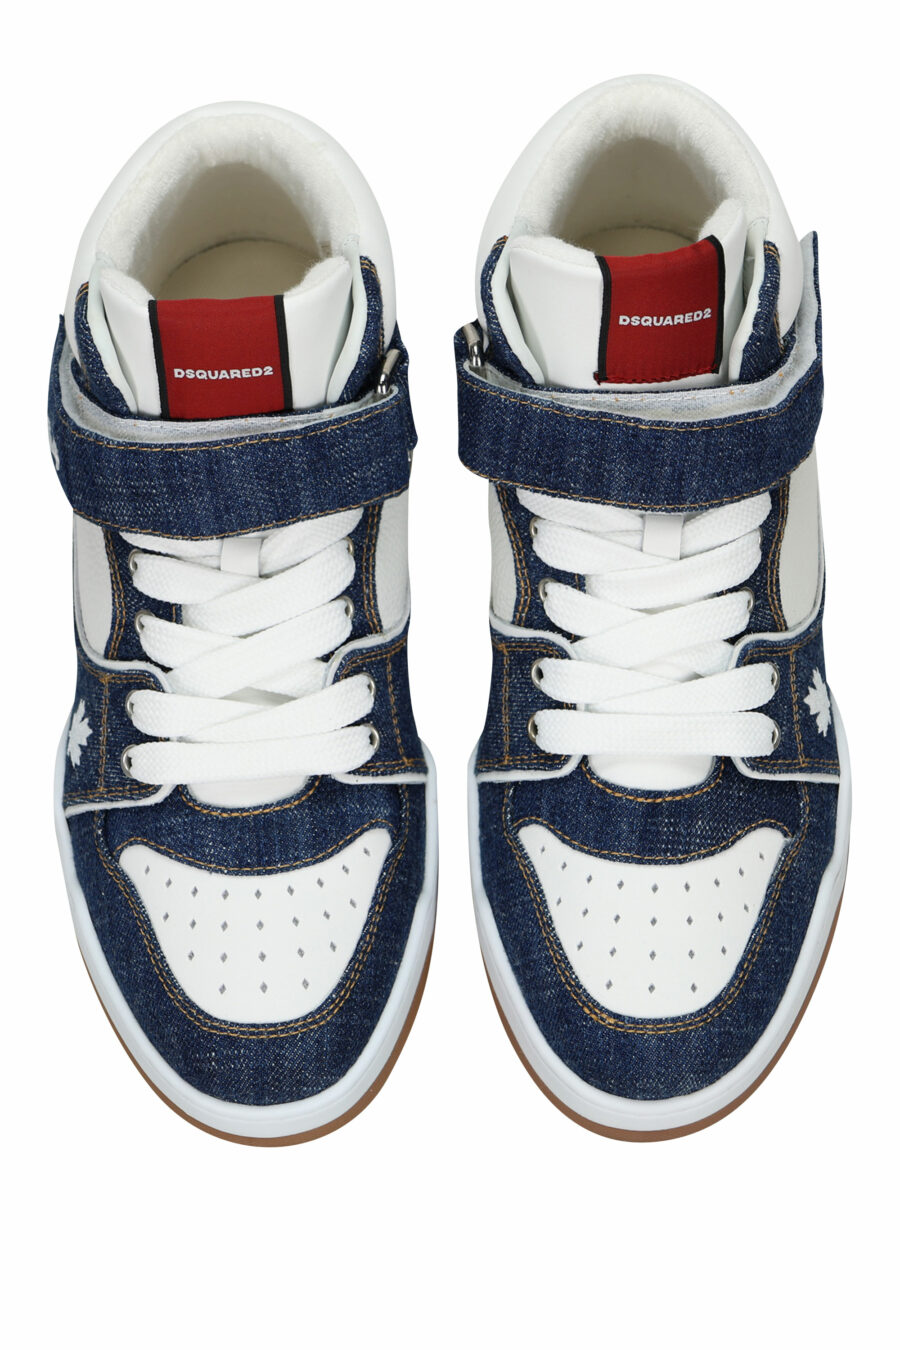 Zapatillas azules denim "spyker" blancas altas con logo - 8055777306079 4